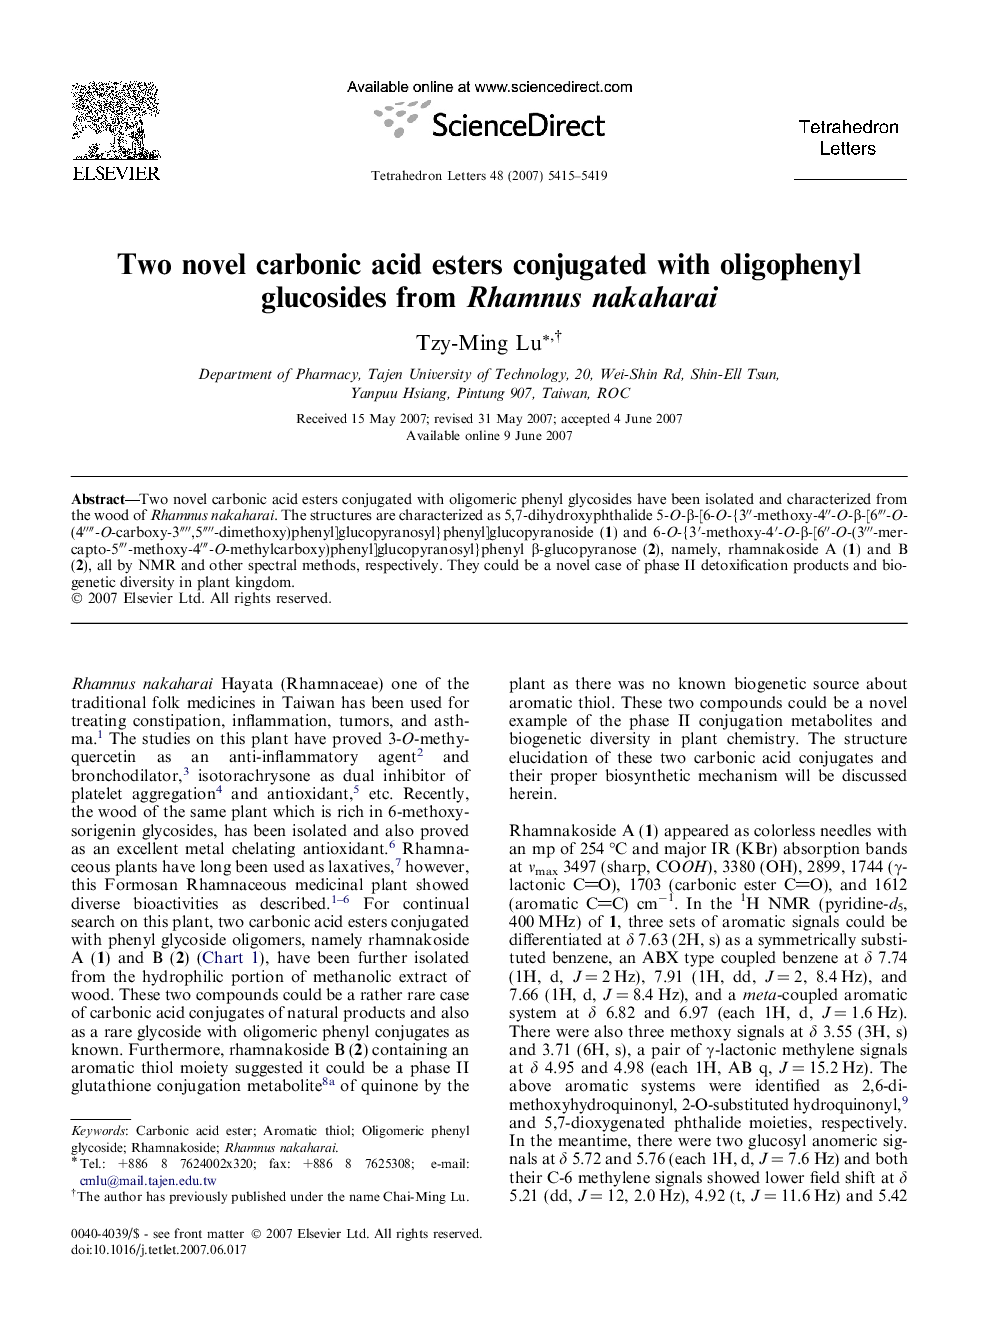 Two novel carbonic acid esters conjugated with oligophenyl glucosides from Rhamnus nakaharai